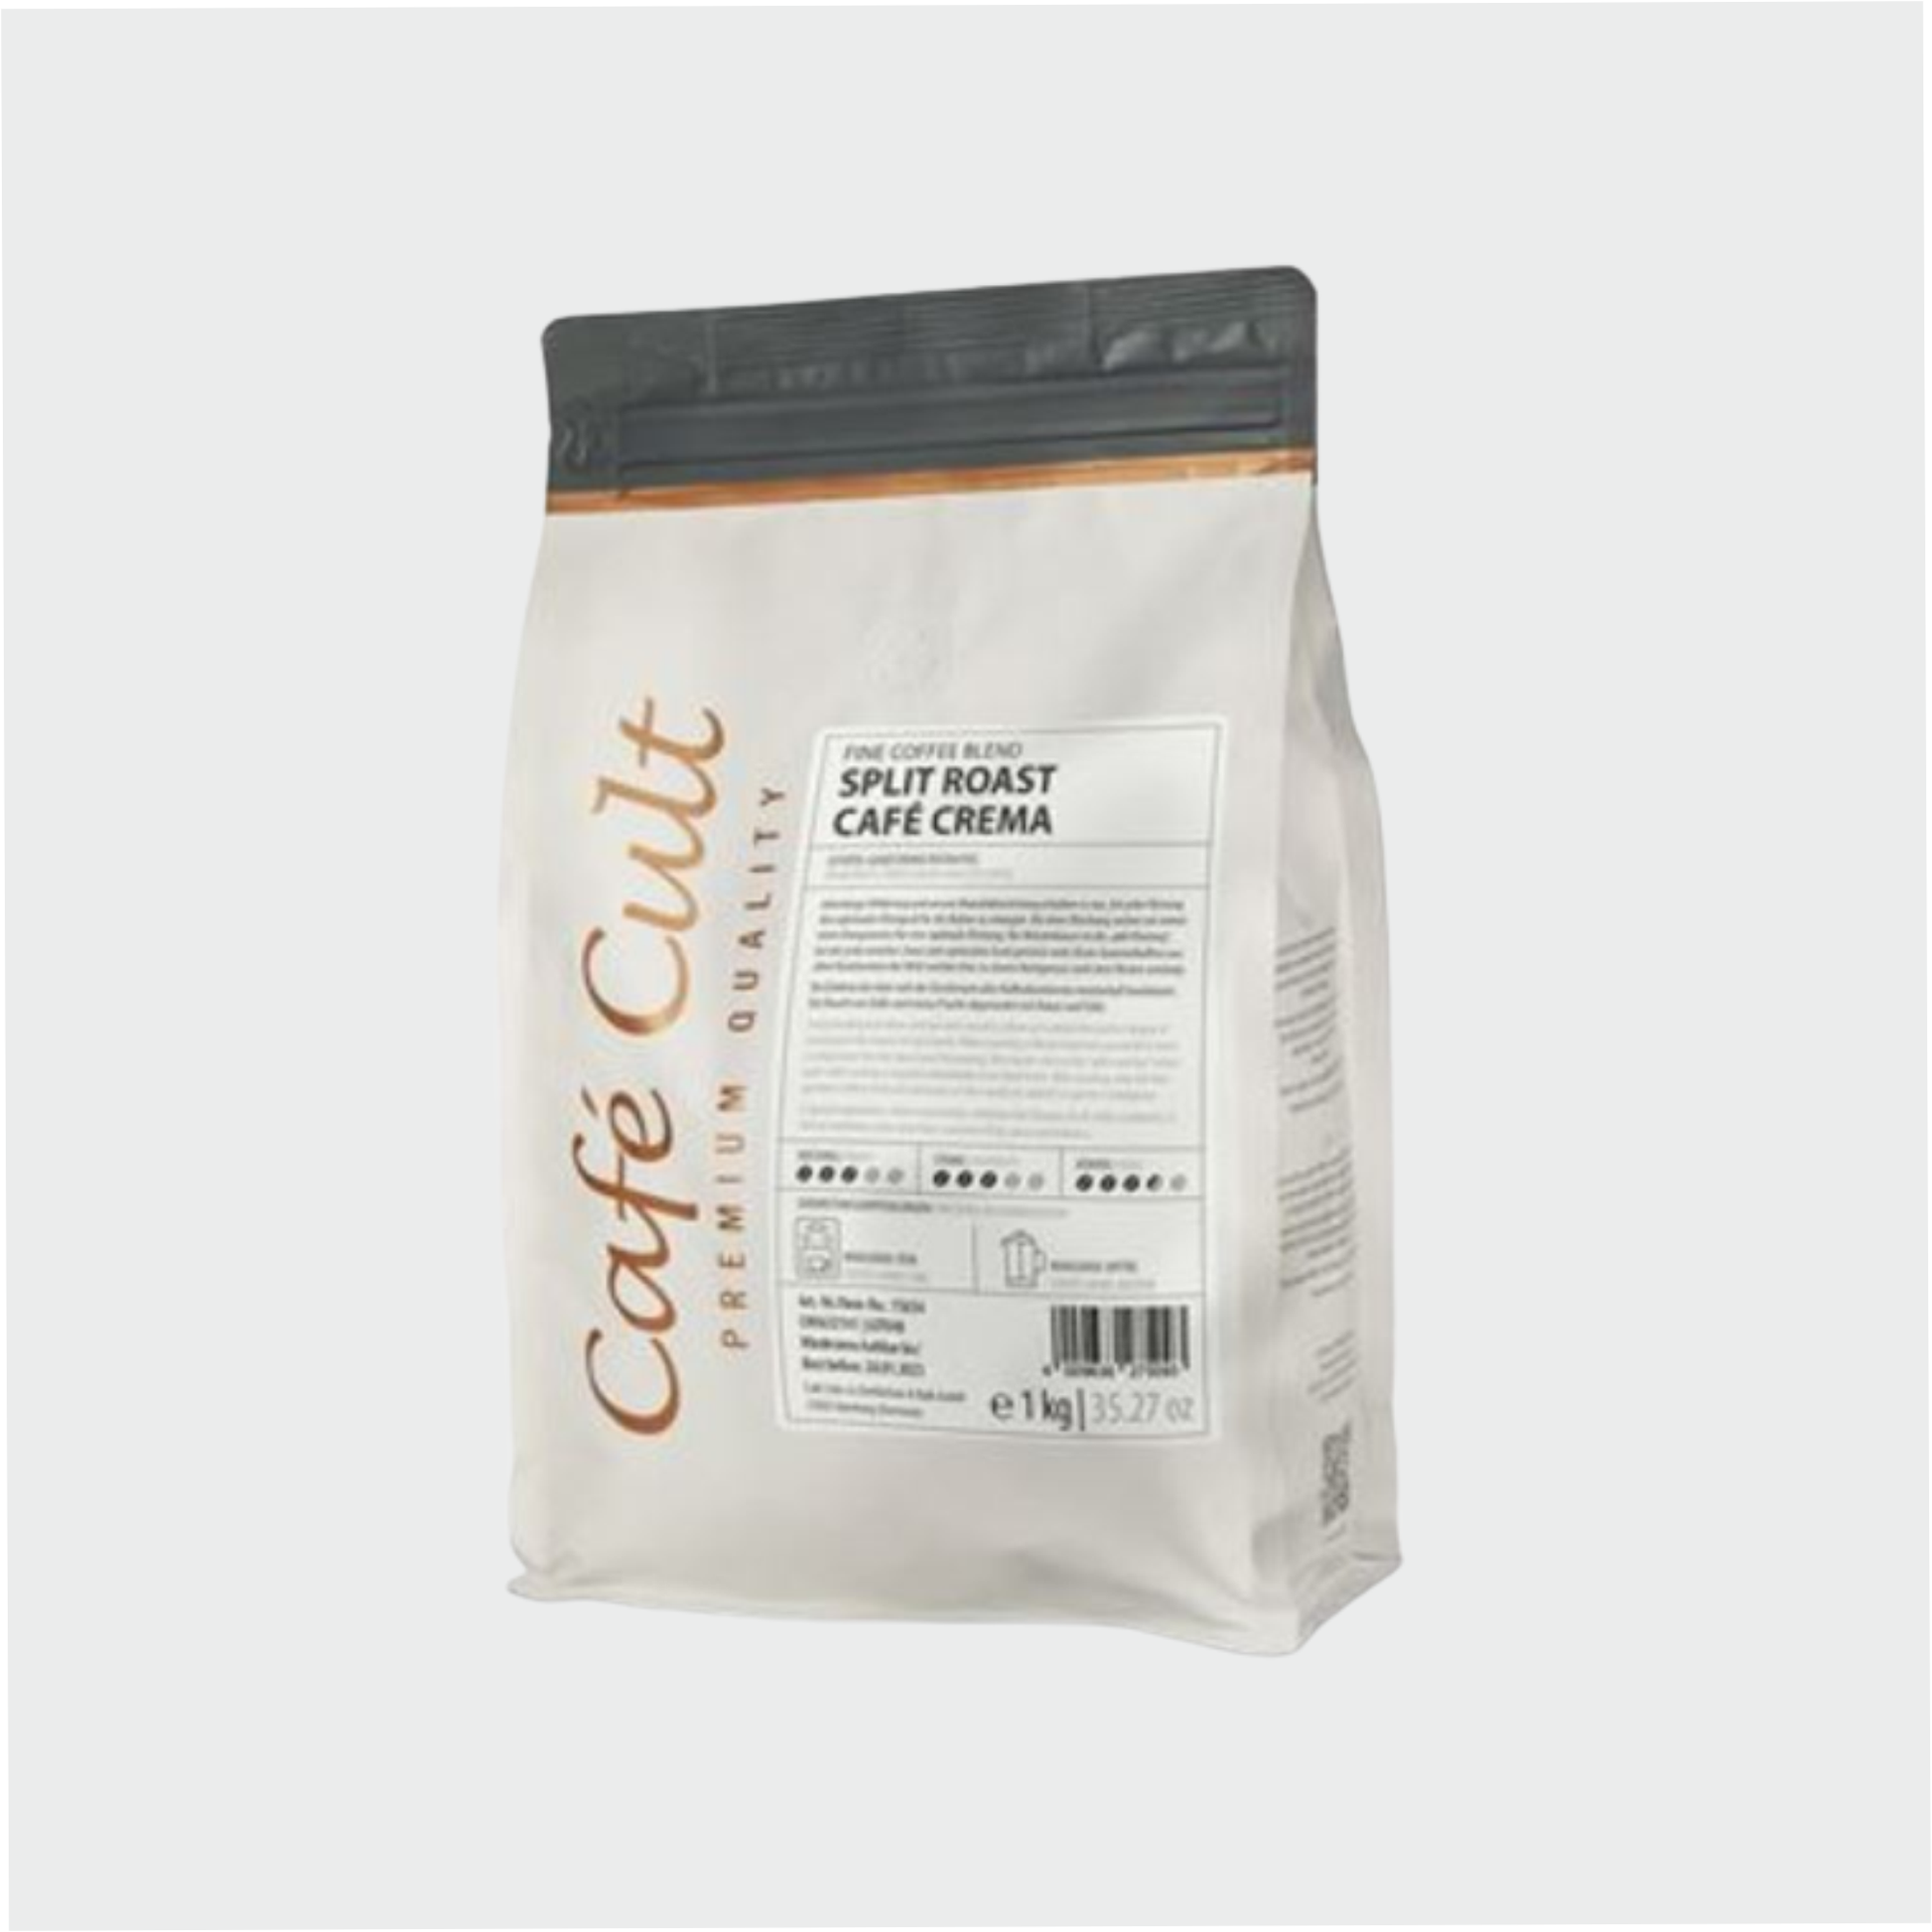 Kaffee SplitRöstung Café Crema in 1 kg Tüte, ganze Bohne